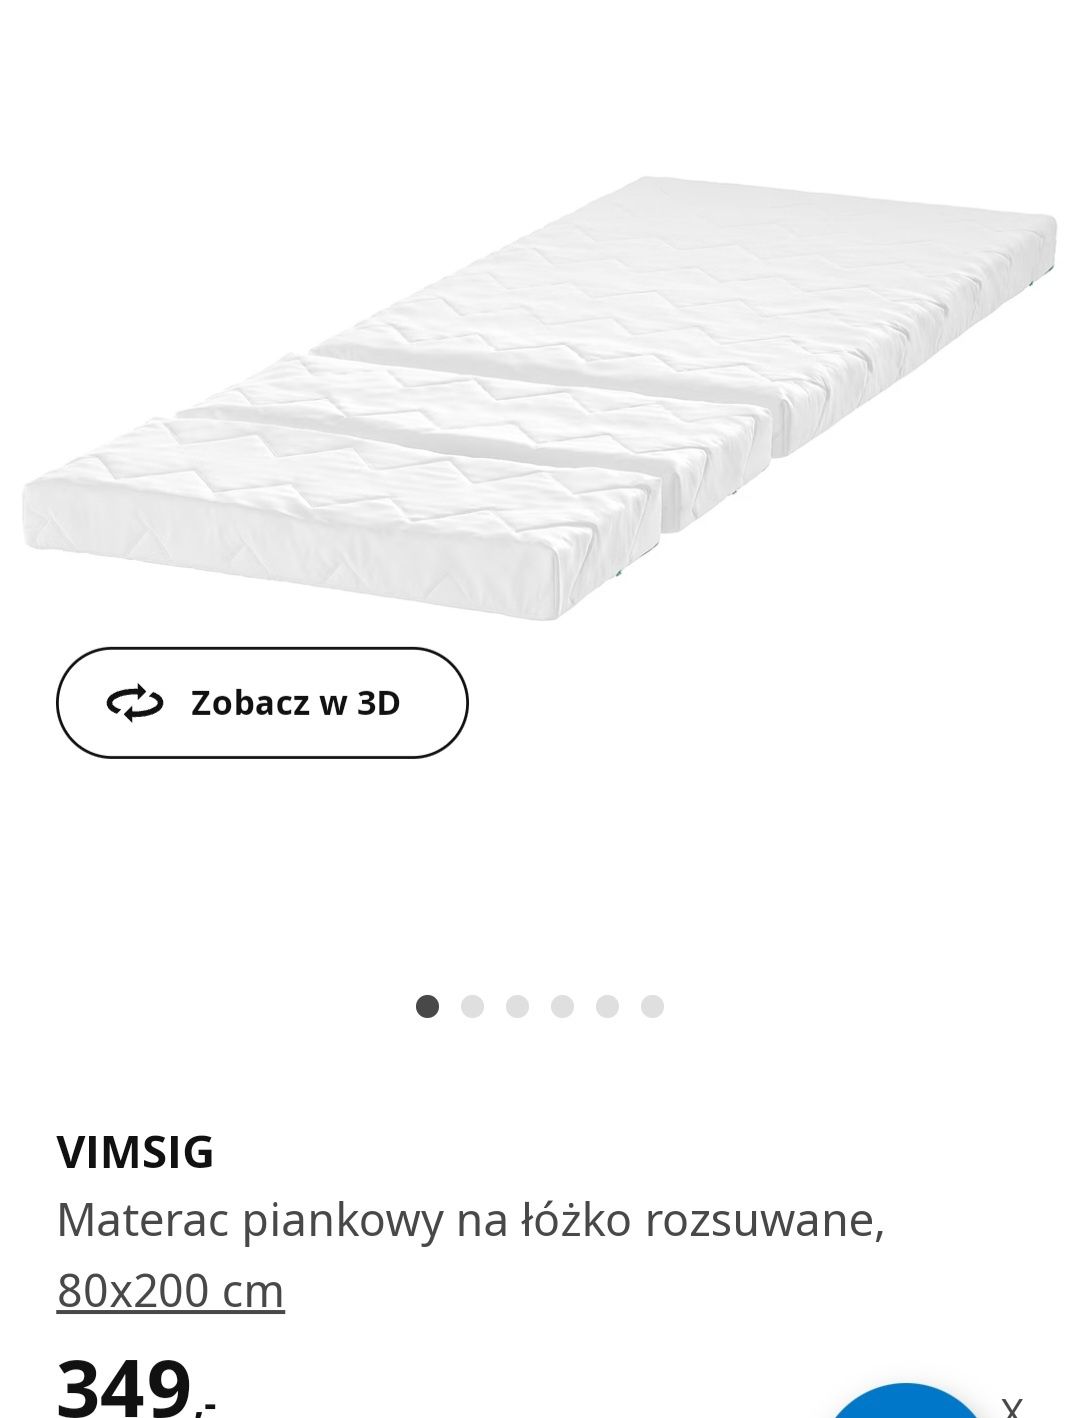 Nowy 1/2 ceny Materac do łóżka rozsuwanego VIMSIG z Ikea
Materac piank